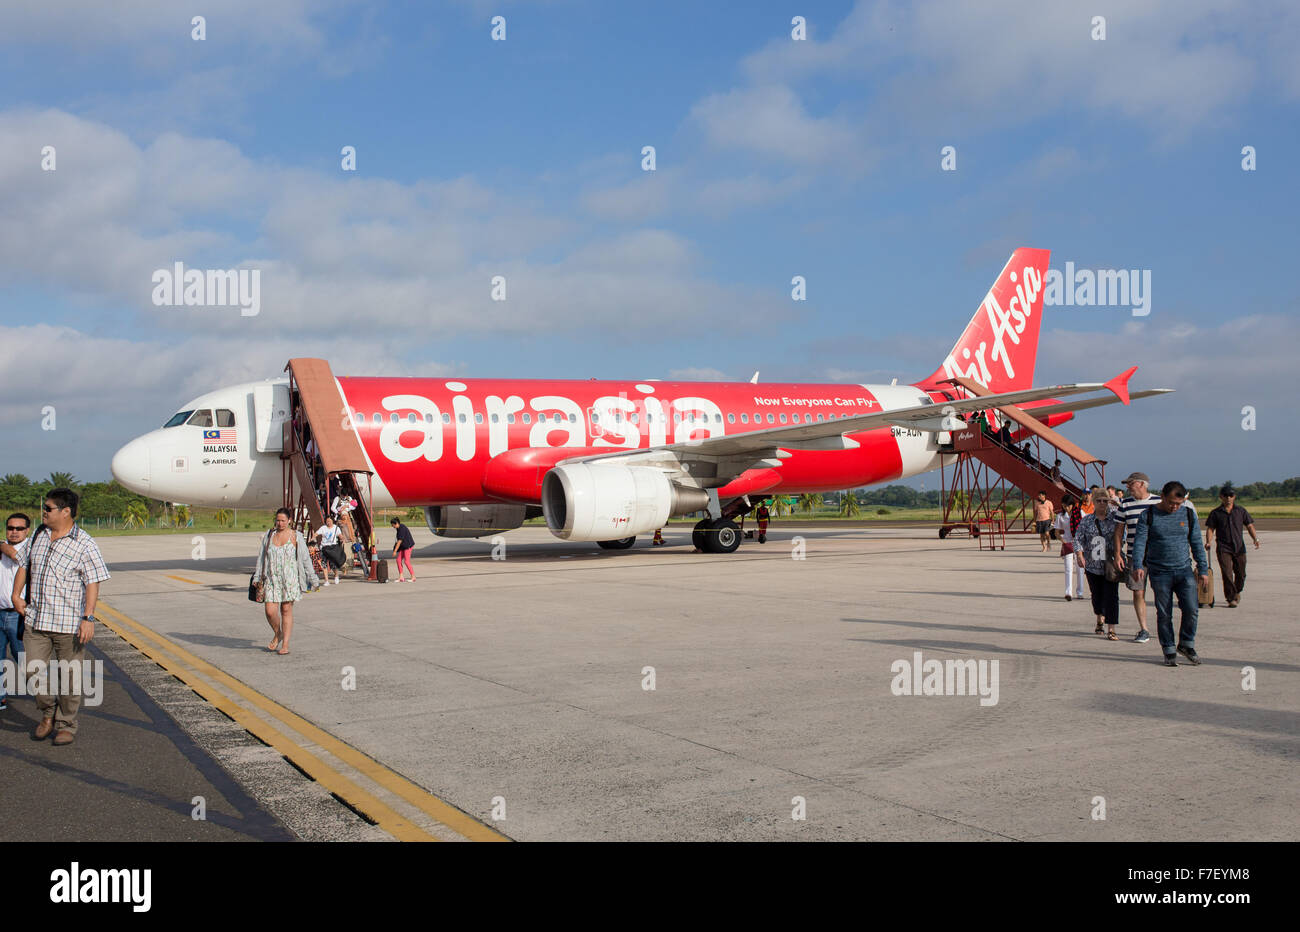 Les passagers débarquant d'Asie de l'air Airbus A320 sur le tarmac de l'Aéroport International de Kuala Lumpur (KLIA 22). Avion regist Banque D'Images